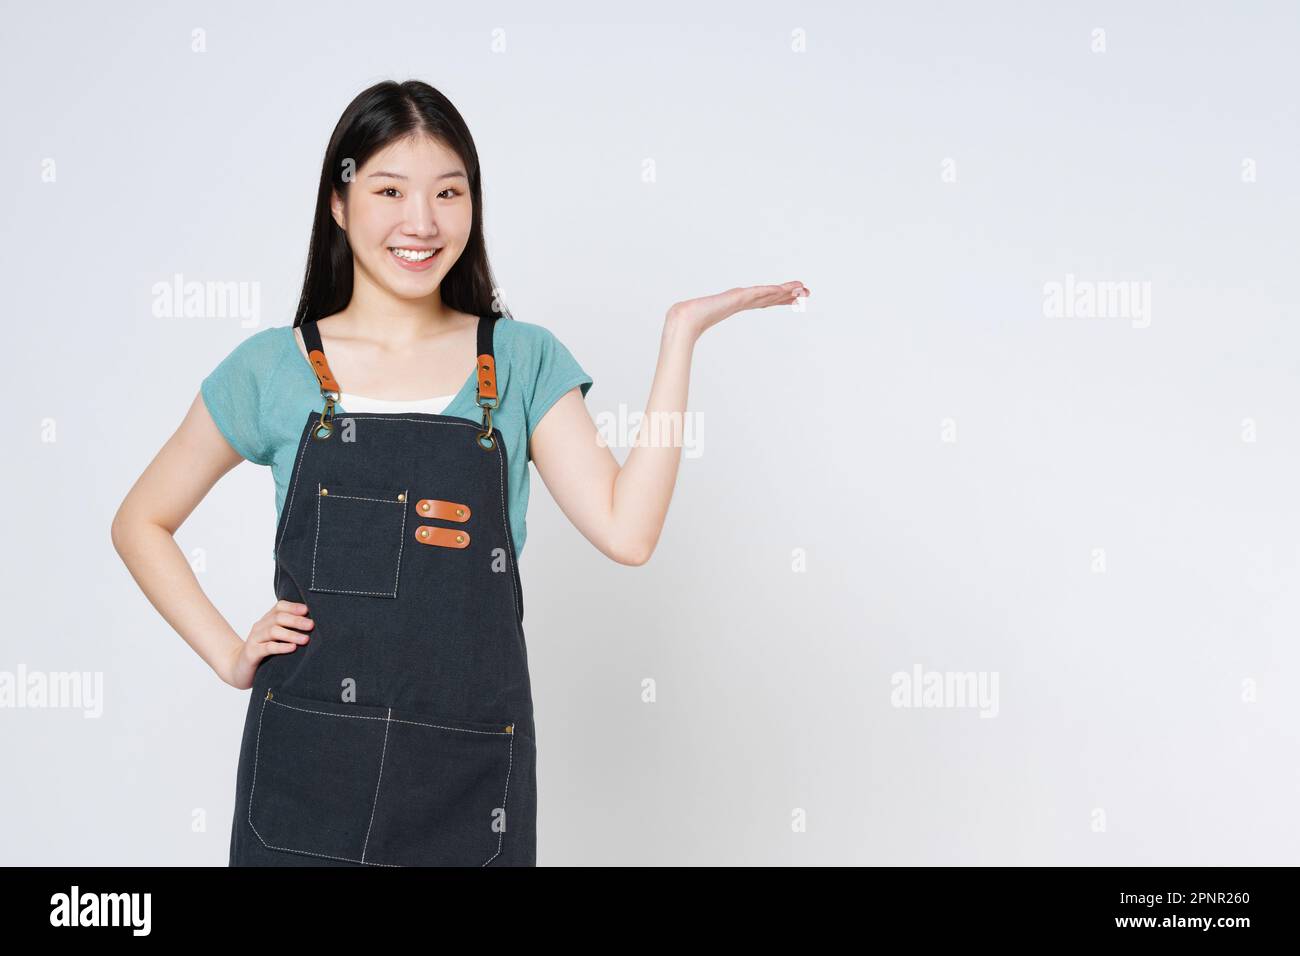 Junge Frau trägt Küchenschürze, präsentiert oder zeigt offene Handfläche mit Kopierbereich für das Produkt isoliert auf weißem Hintergrund. Stockfoto